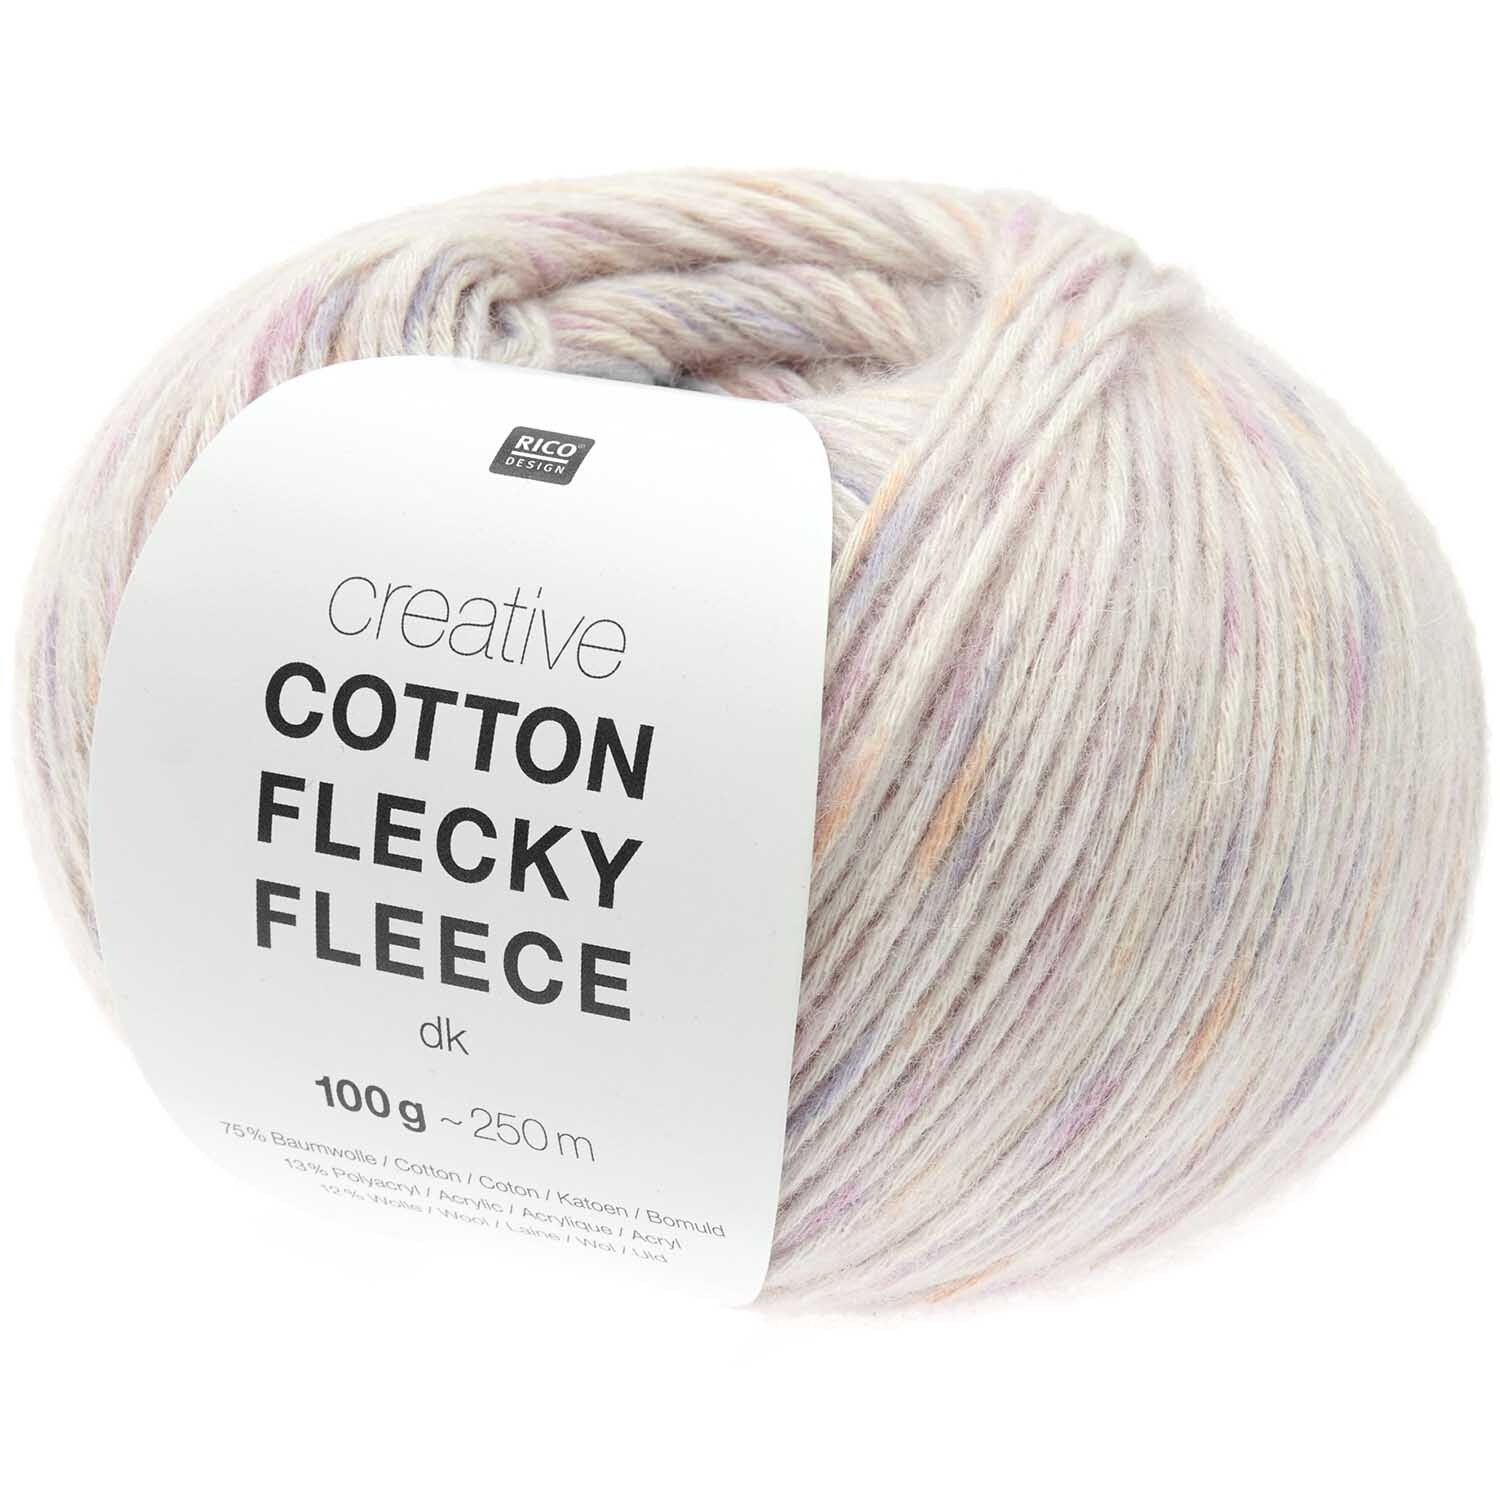 Creative Cotton Flecky Fleece dk